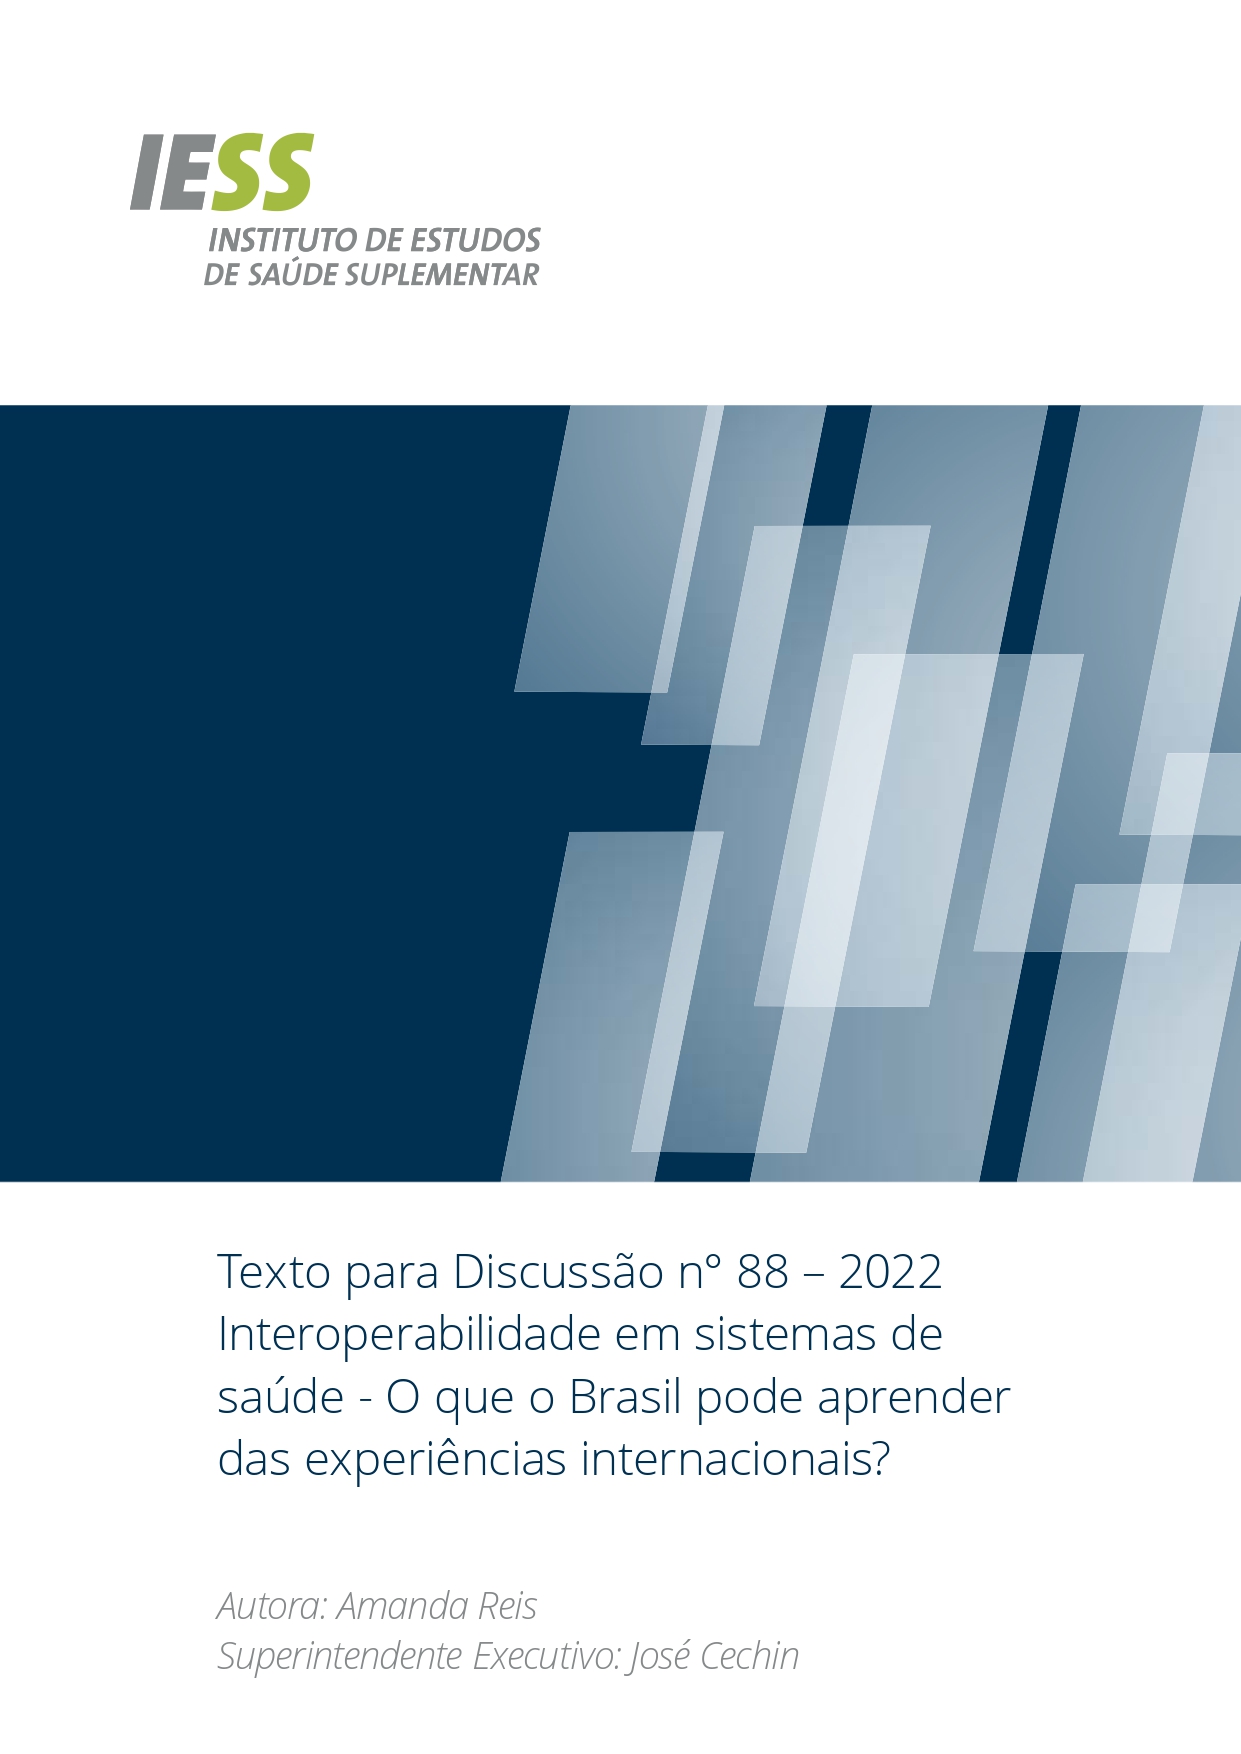 TD 88 - Interoperabilidade em sistemas de saúde - O que o Brasil pode aprender das experiências internacionais?